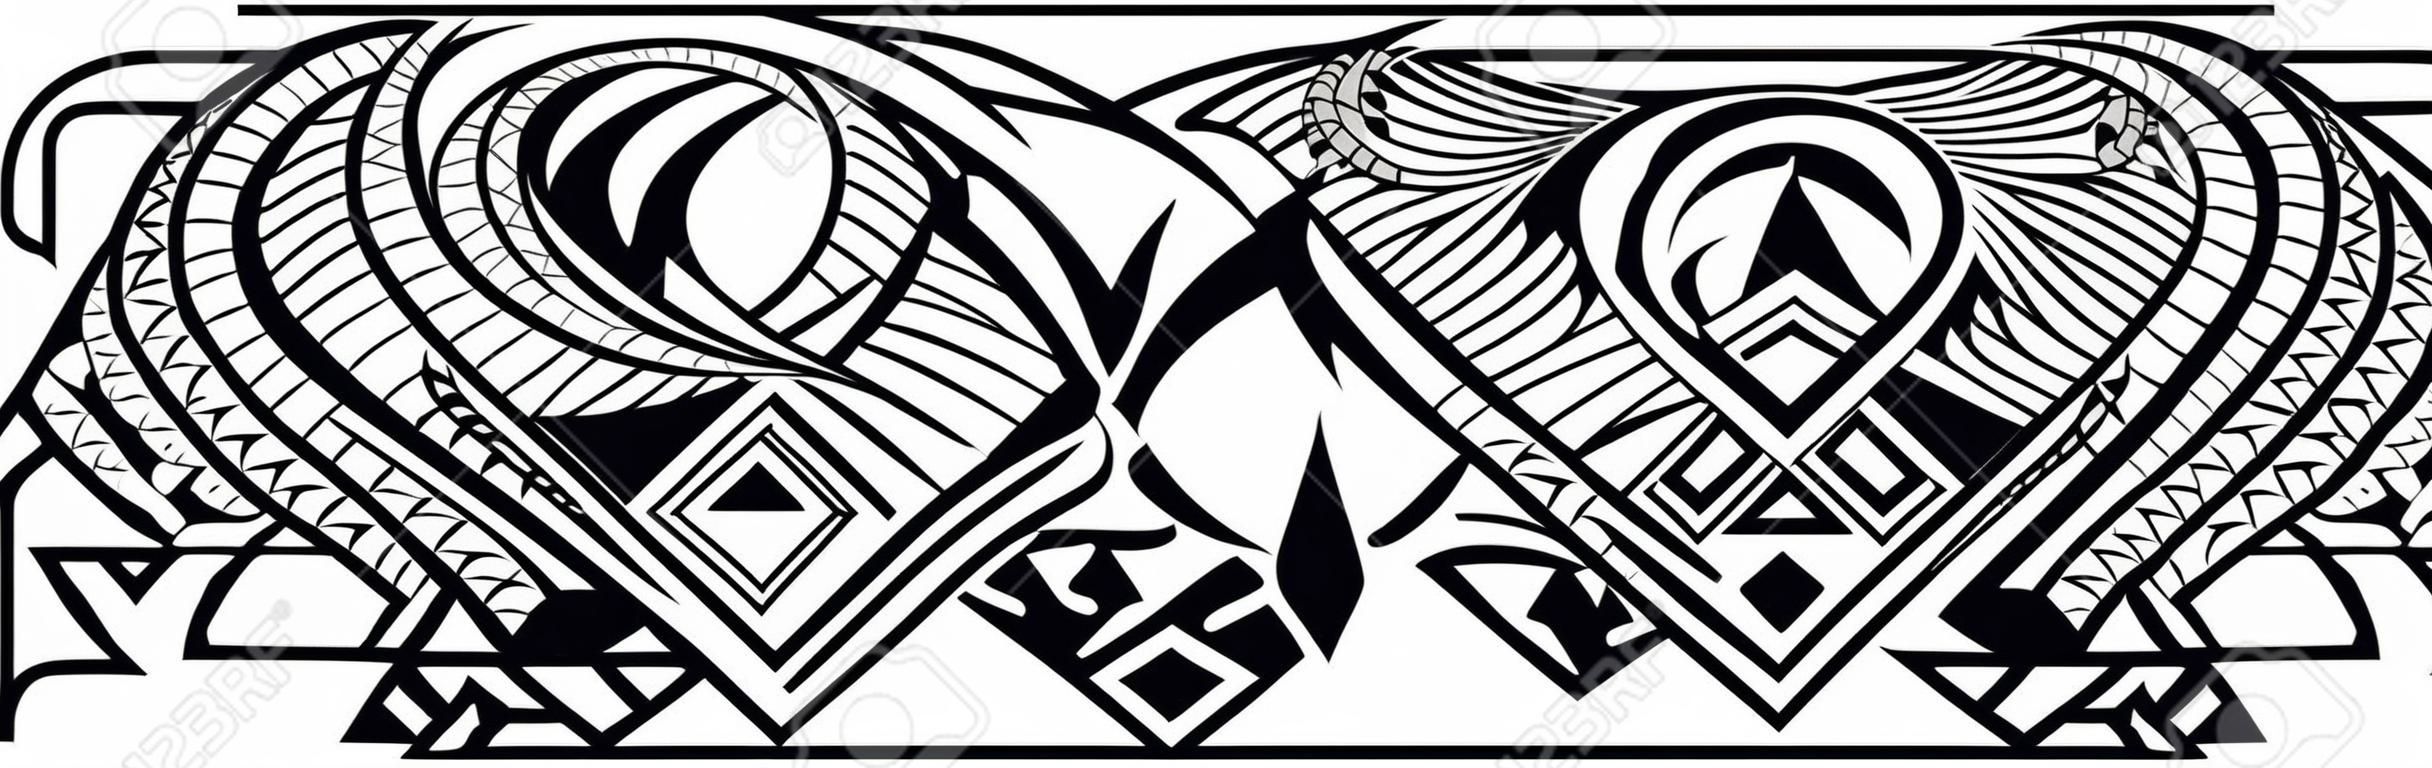 Polinezyjski wzór tatuażu maoryski, obramowanie ornament samoa, etyczny szablon plemienny wektor.